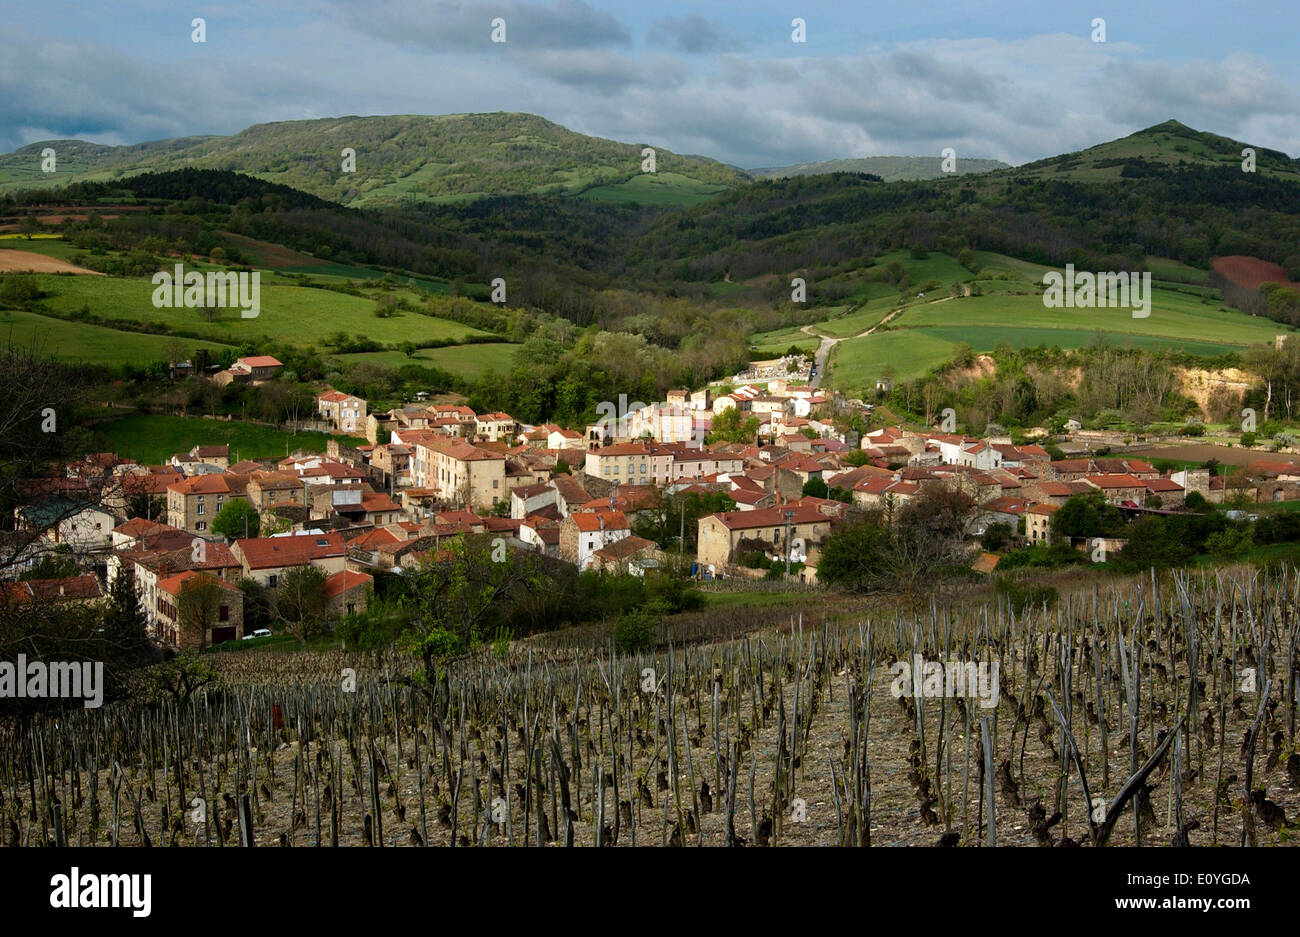 Village de Solignat et vignoble, Puy de Dome, Auvergne, France Banque D'Images